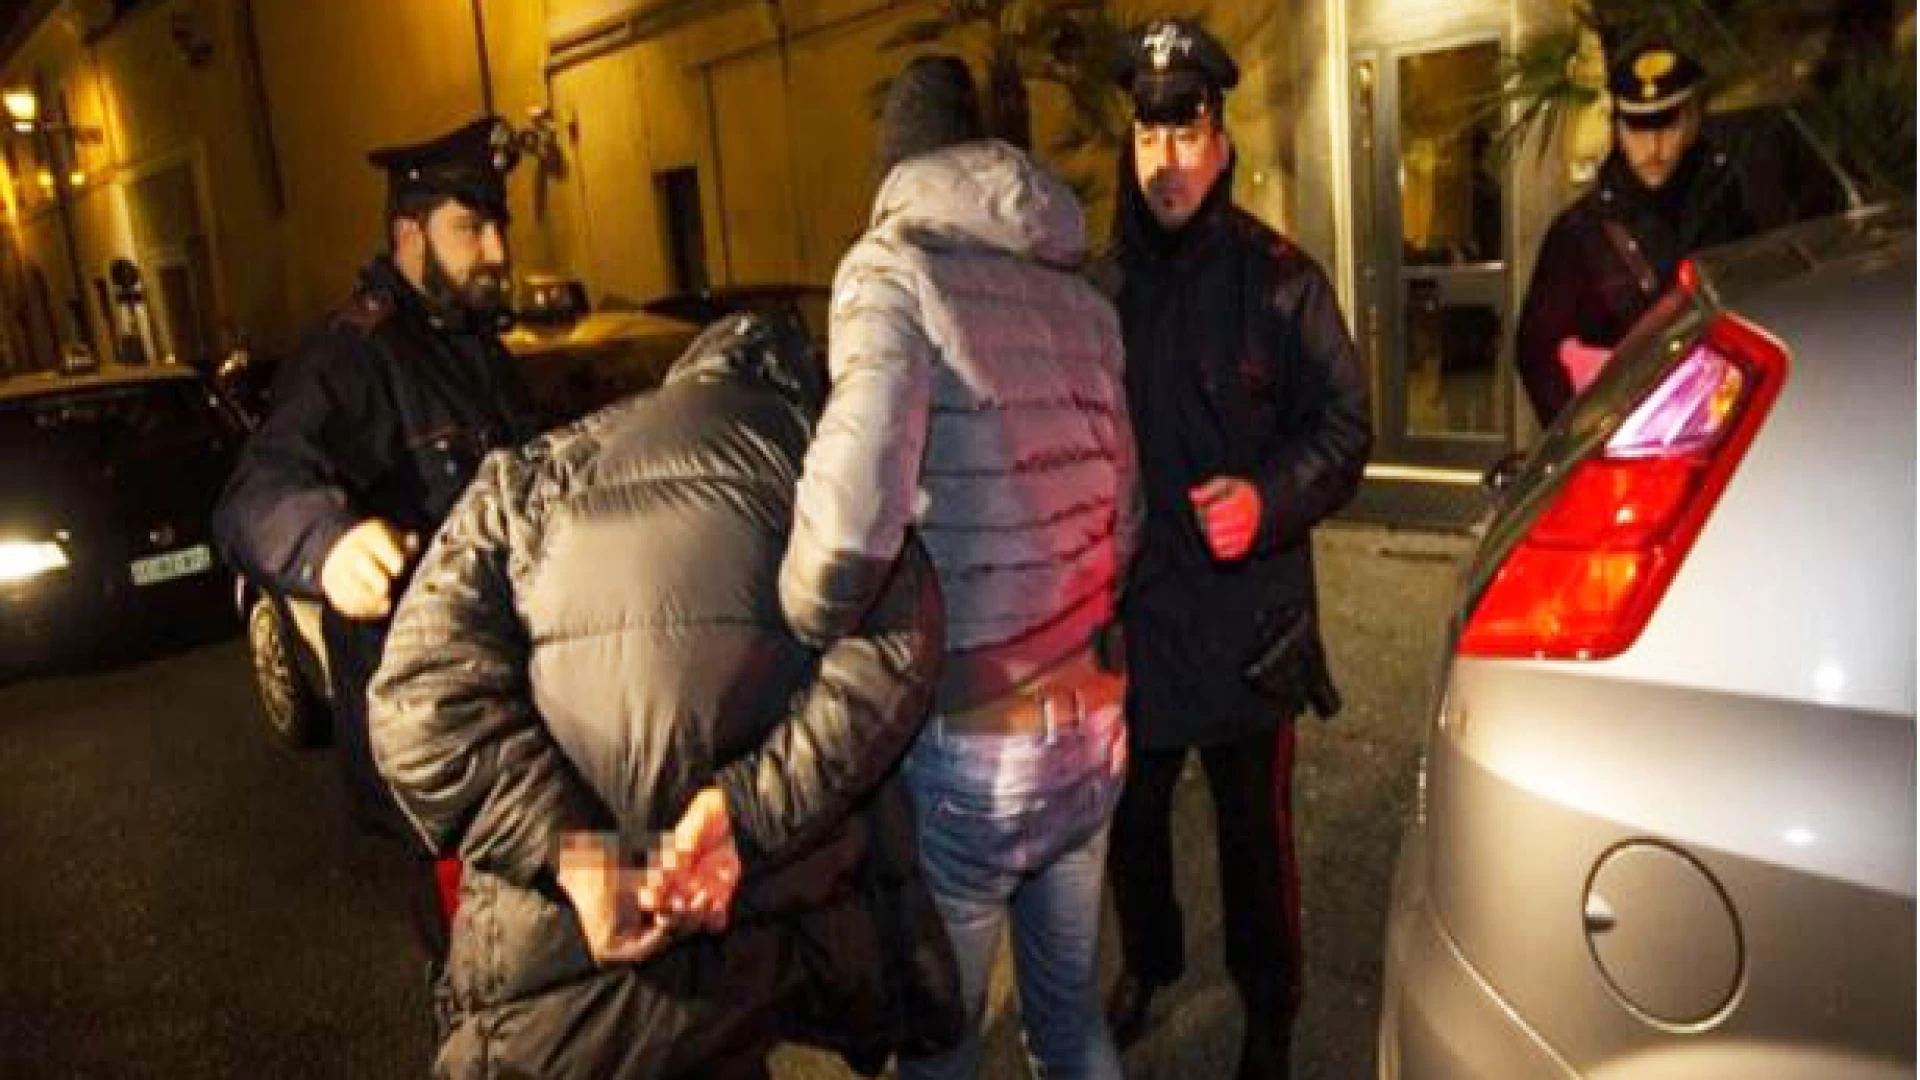 Sesto Campano: Molestie e minacce alla ex fidanzata, 30enne denunciato dai Carabinieri per “stalking”.